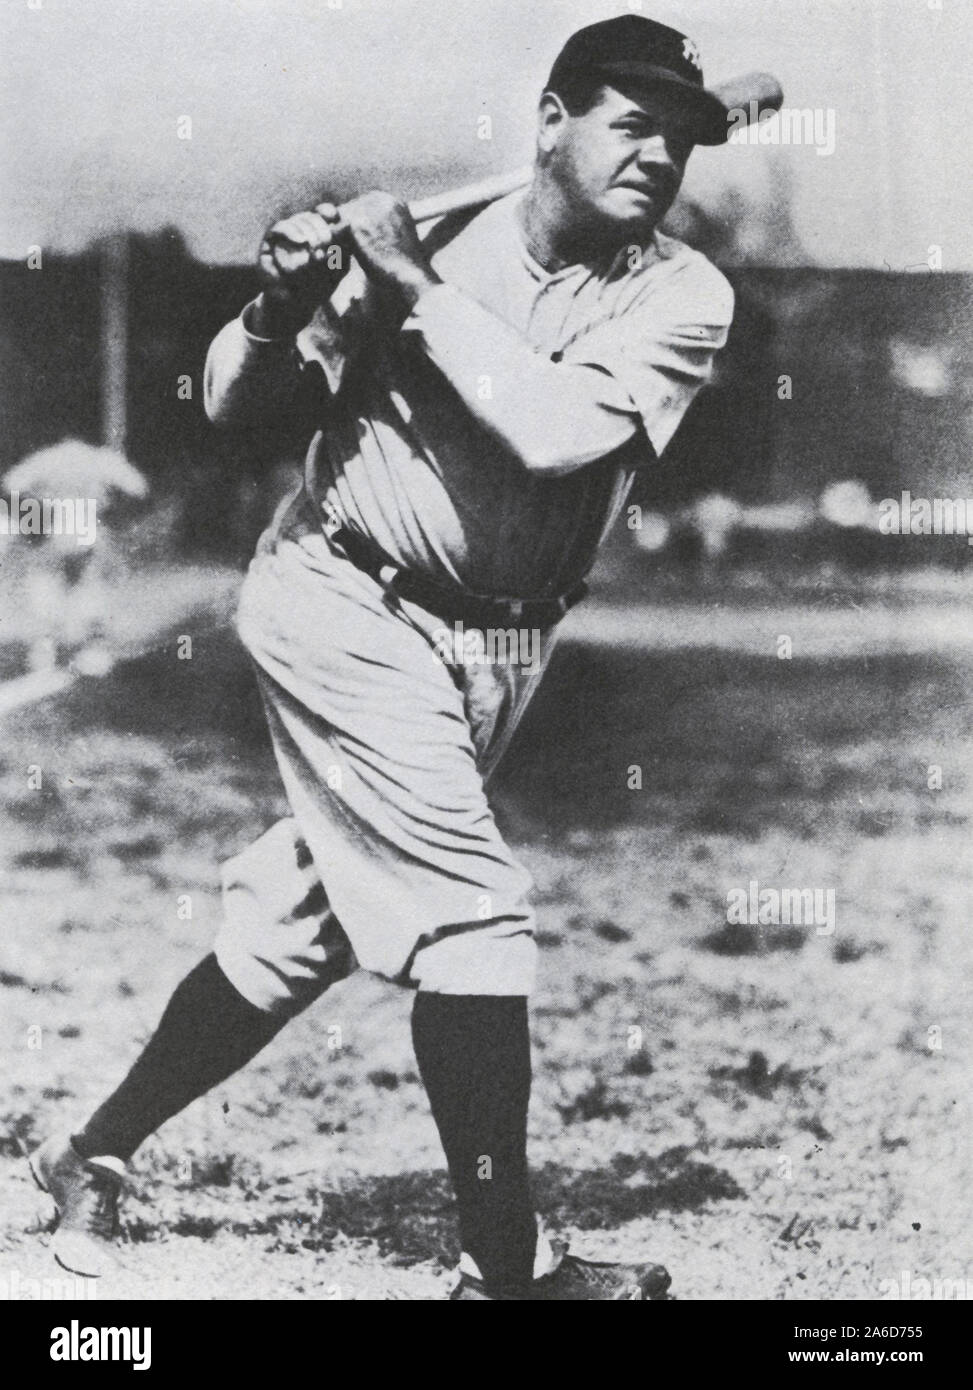 Photo noir et blanc vintage du joueur de baseball du Hall of Fame Babe Ruth avec les New York Yankees. Banque D'Images